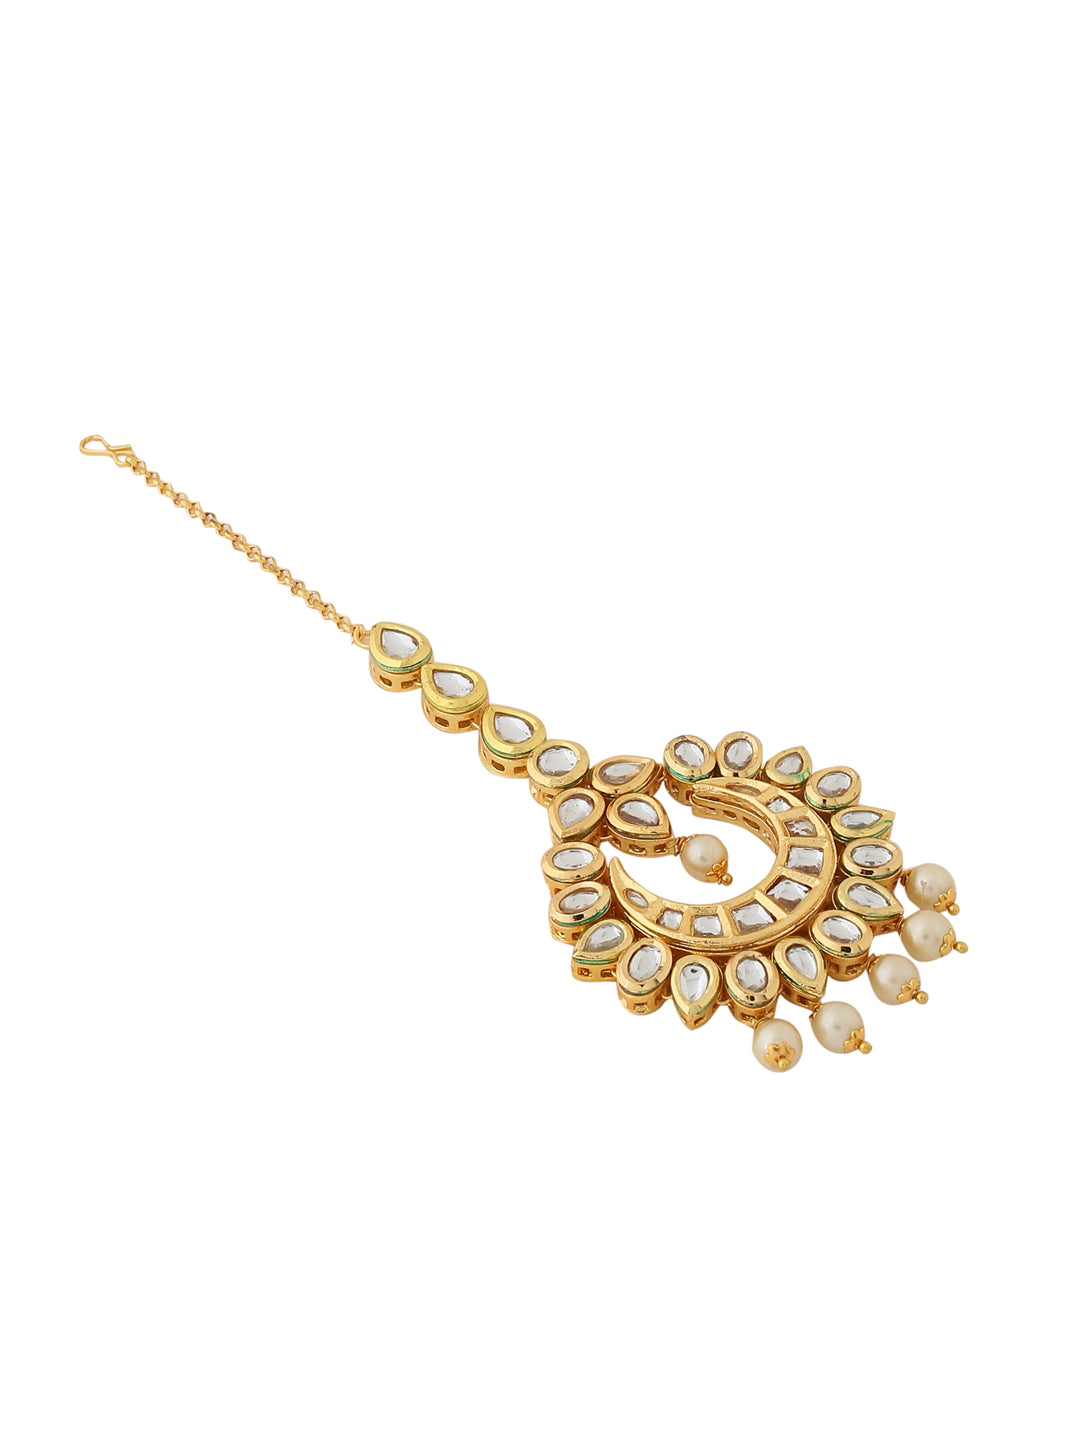 gold-plated-kundan-maang-tikka-with-pearls-viraasi